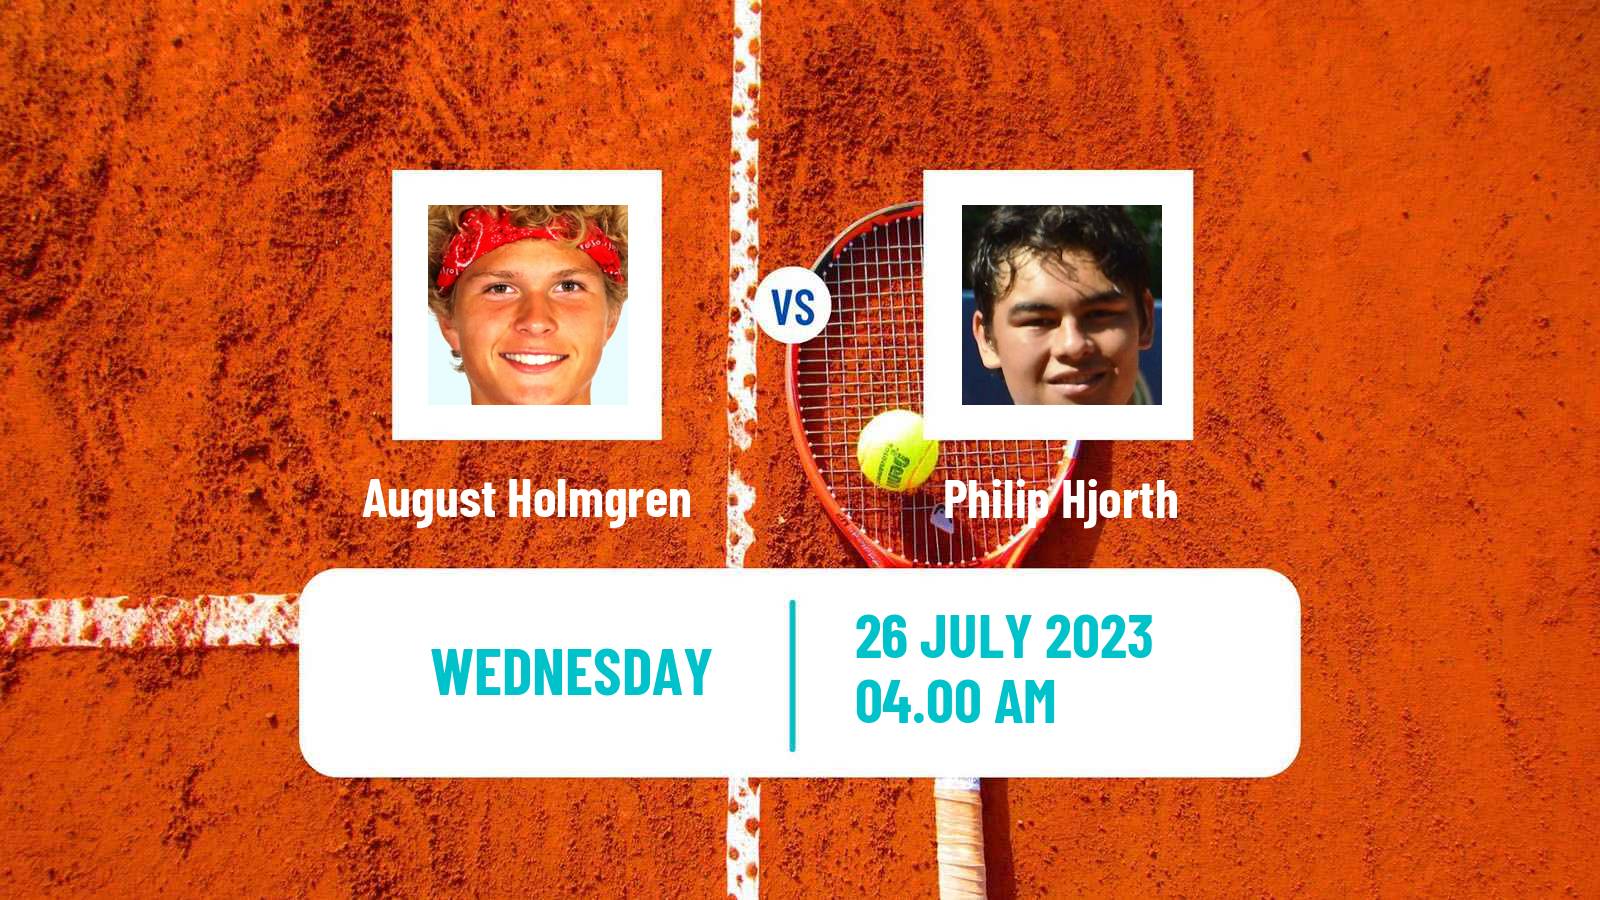 Tennis ITF M15 Vejle Men August Holmgren - Philip Hjorth